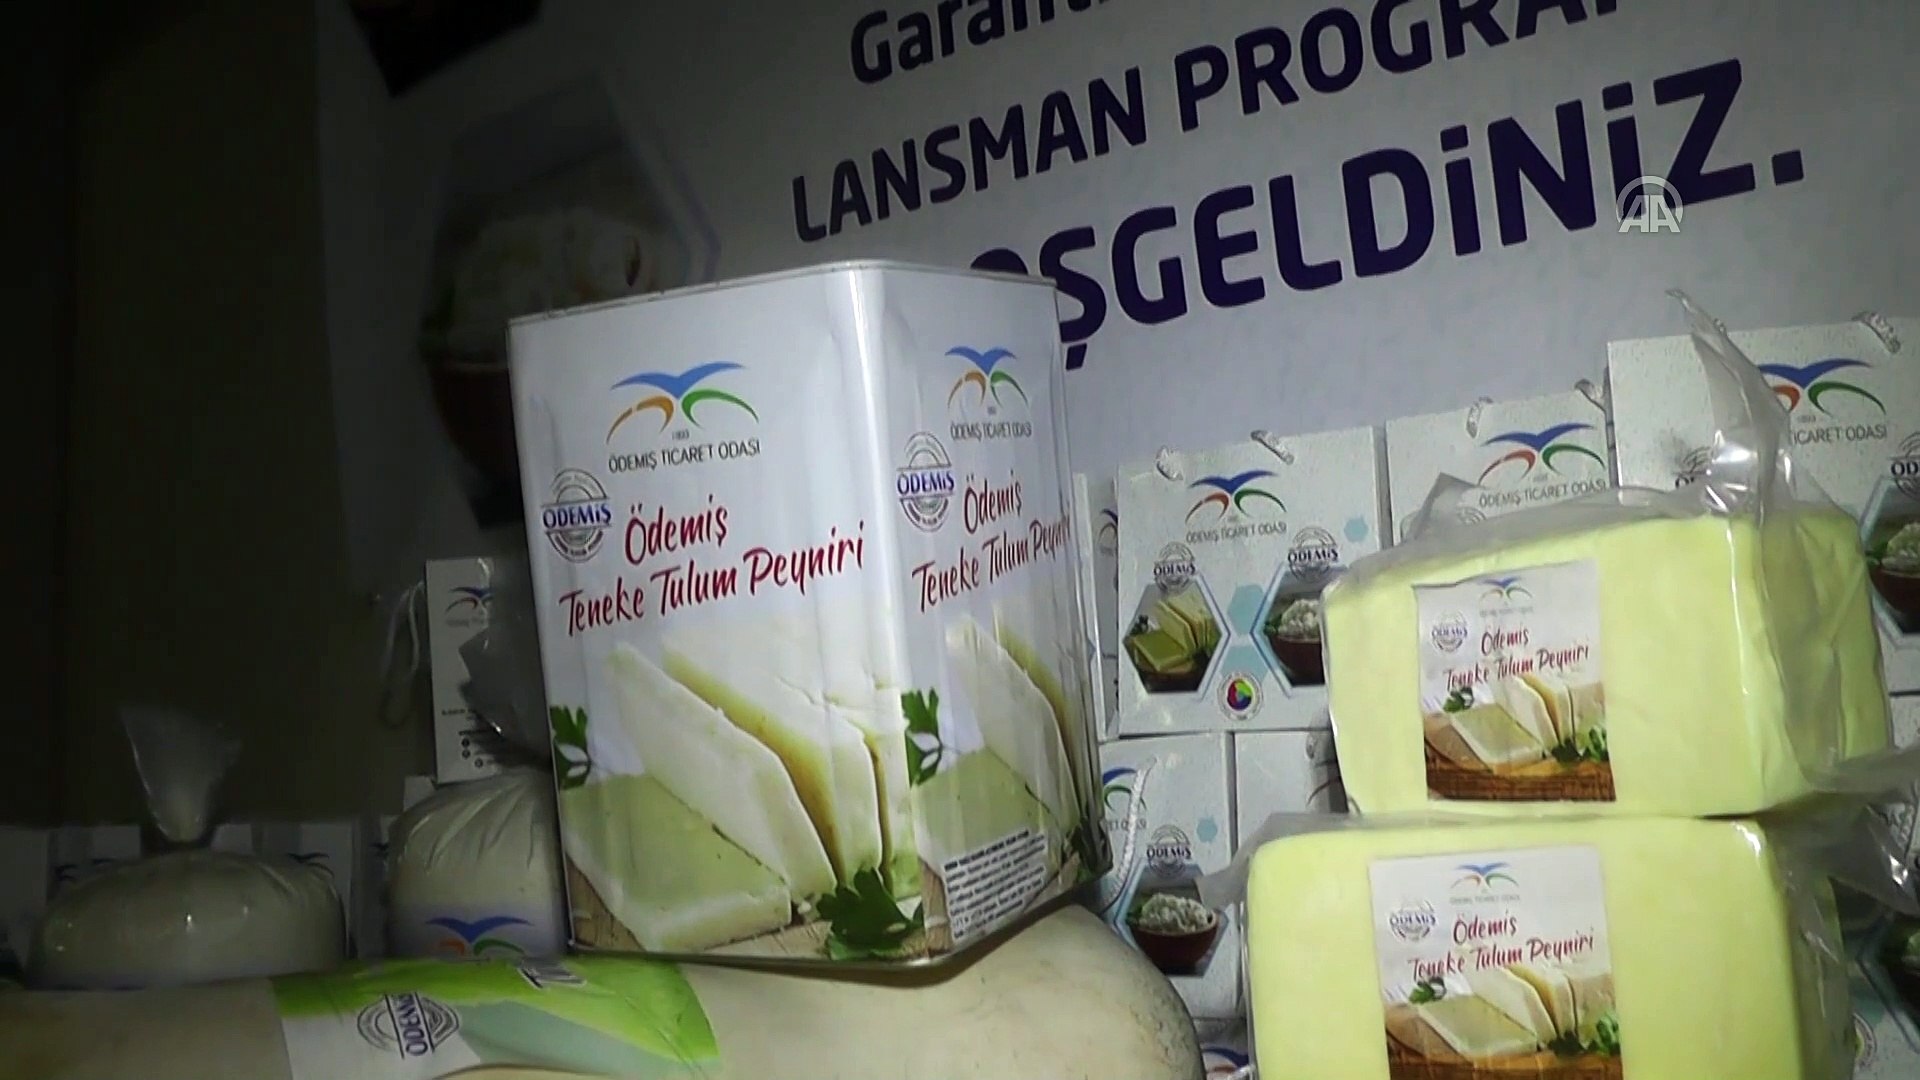 Ödemiş'in 'garanti markalı' lor ve tulum peyniri tanıtıldı - İZMİR -  Dailymotion Video